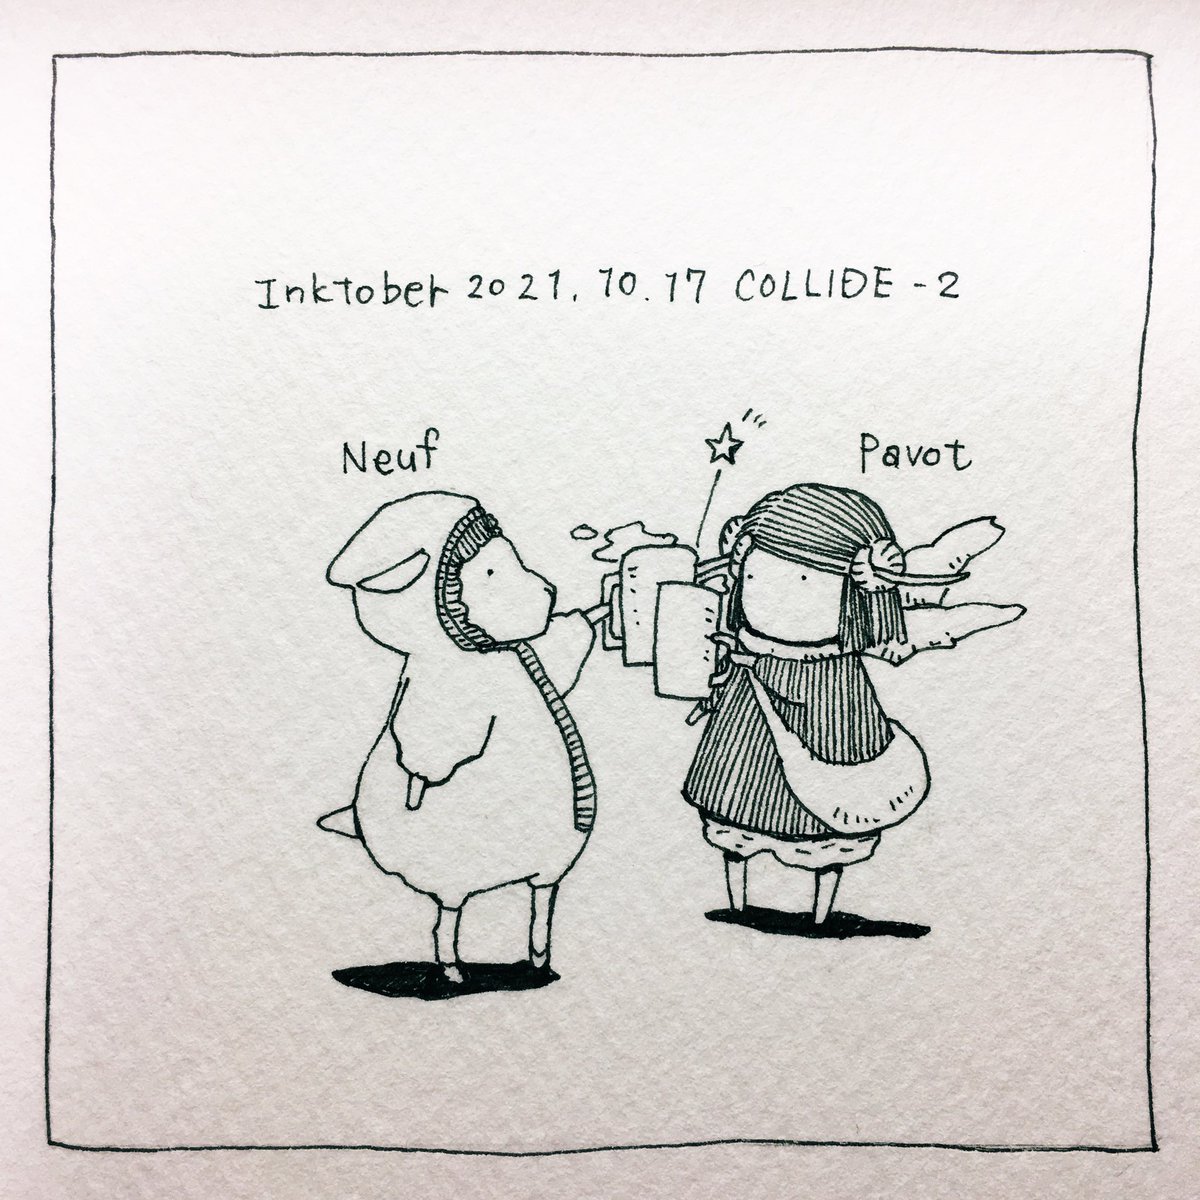 リクエストがあったので10/17の「衝突」をヌッフとパヴォで描きました。
(ヌッフはpixivの企画で描いた羊のキャラクターです。詳しくはリンクをご覧下さい)
I drew "Collide" on 10/17 with Neuf and Pavot.(Neuf is a sheep character I drew for a pixiv project. Please )
https://t.co/nzziIdgYLq 